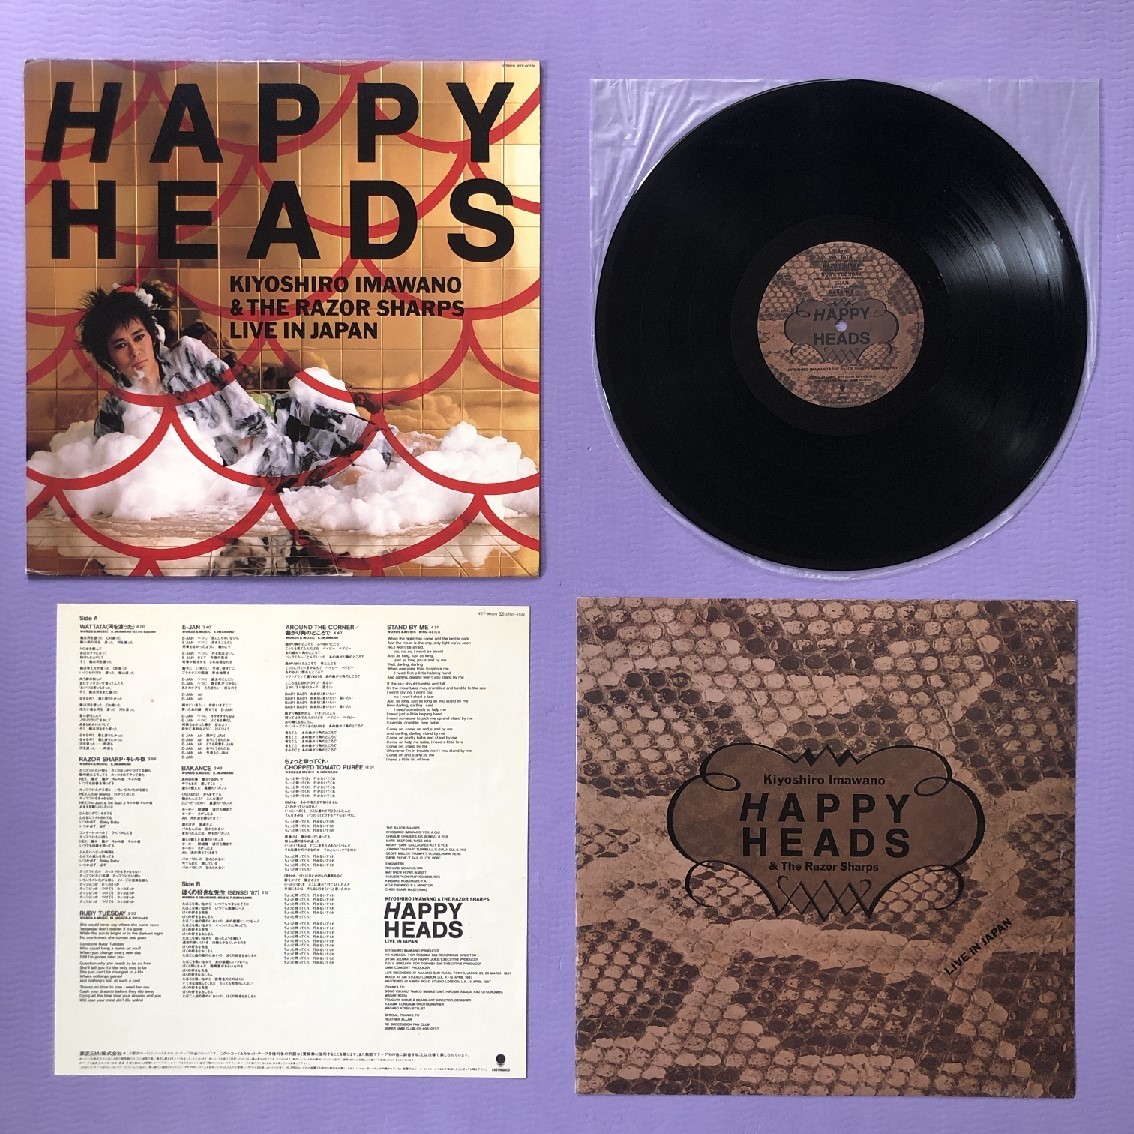 美盤 レア盤 忌野清志郎 Kiyoshiro Imawano & The Razor Sharps 1987年 LPレコード Happy Heads - Live In Japan 国内盤 J-Rock_画像5